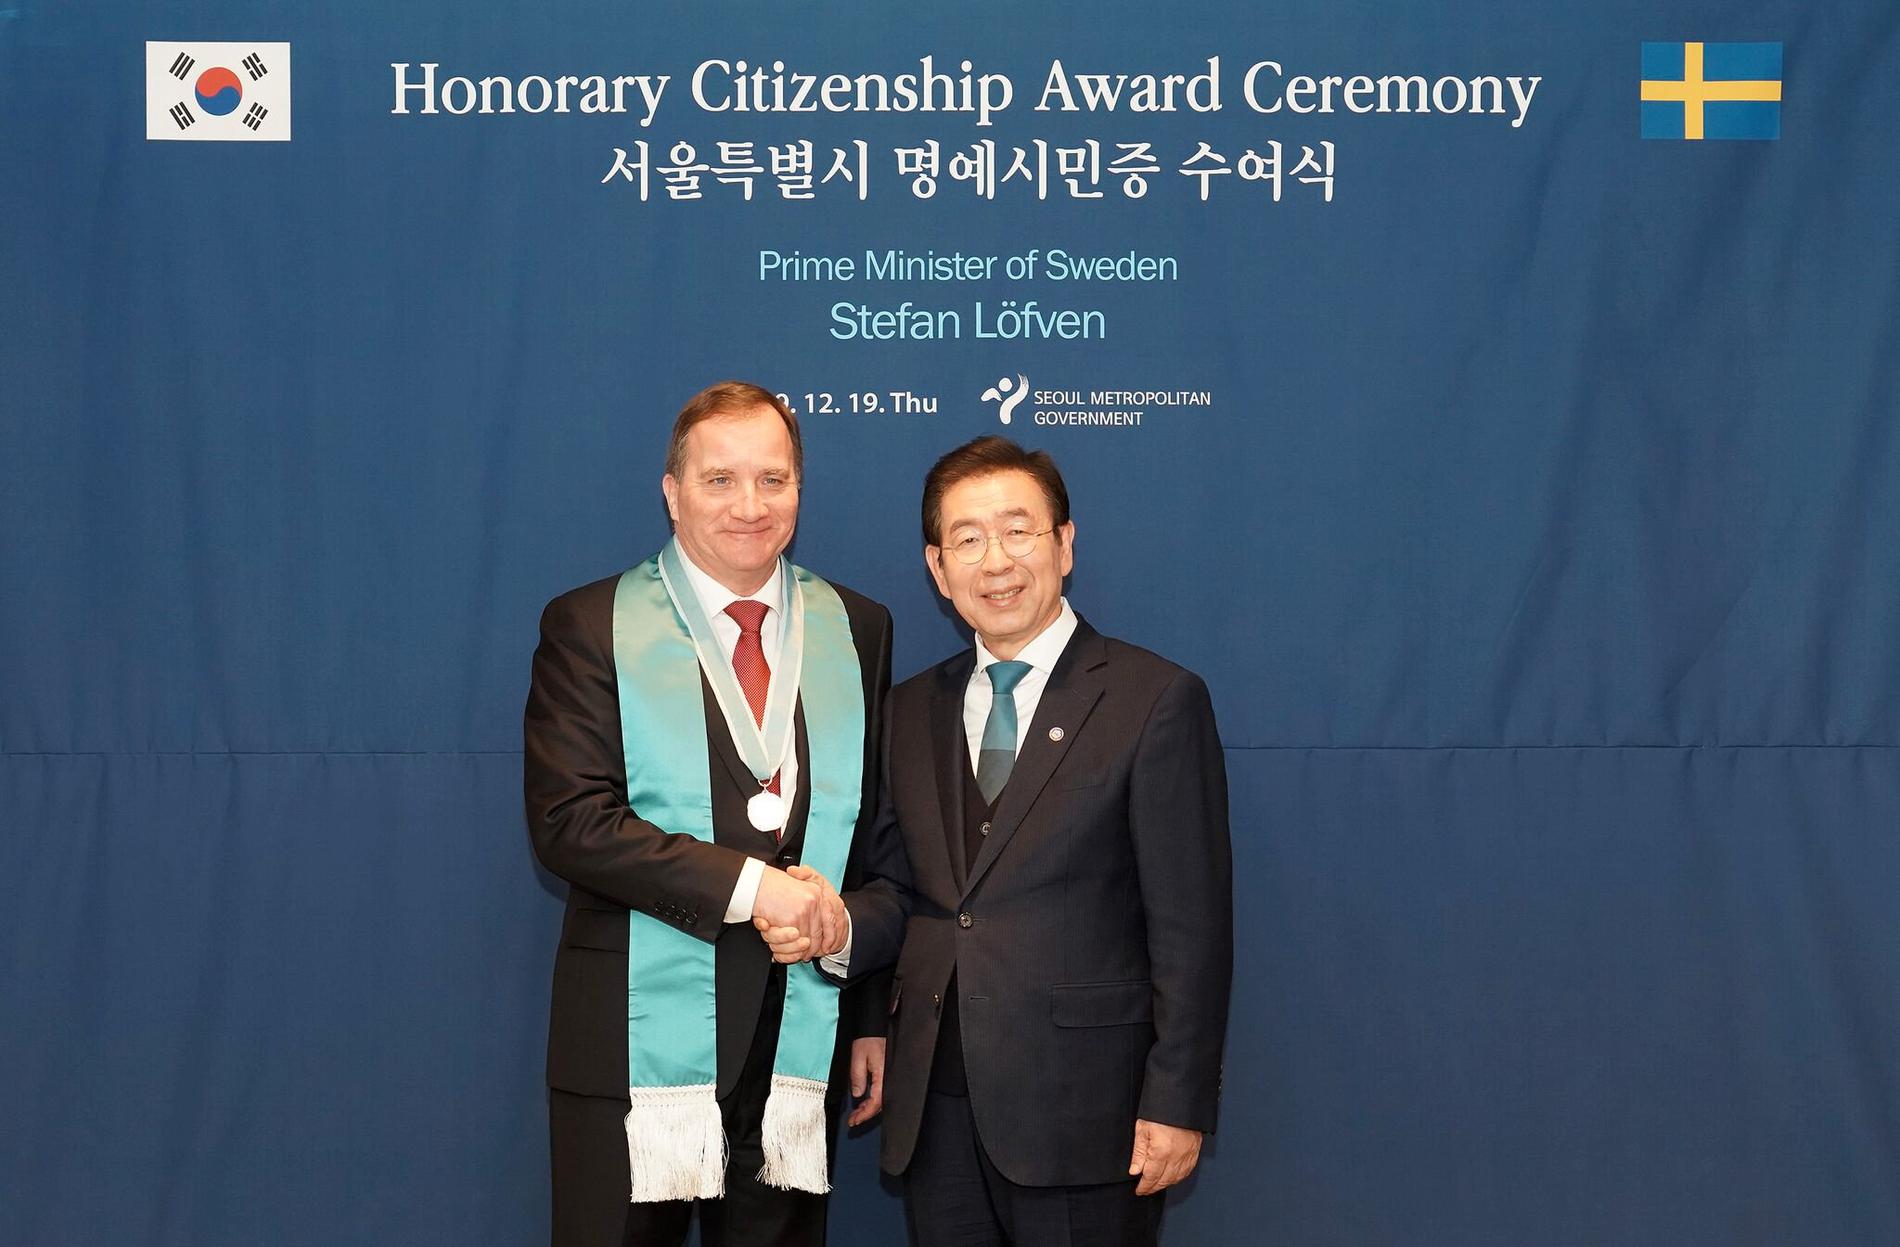 Under besöket i Sydkorea har statsminister Stefan Löfven utsetts till hedersmedborgare i Seoul. Här med Seouls borgmästare Park Won-Soon. "Det är en ära", säger Stefan Löfven.